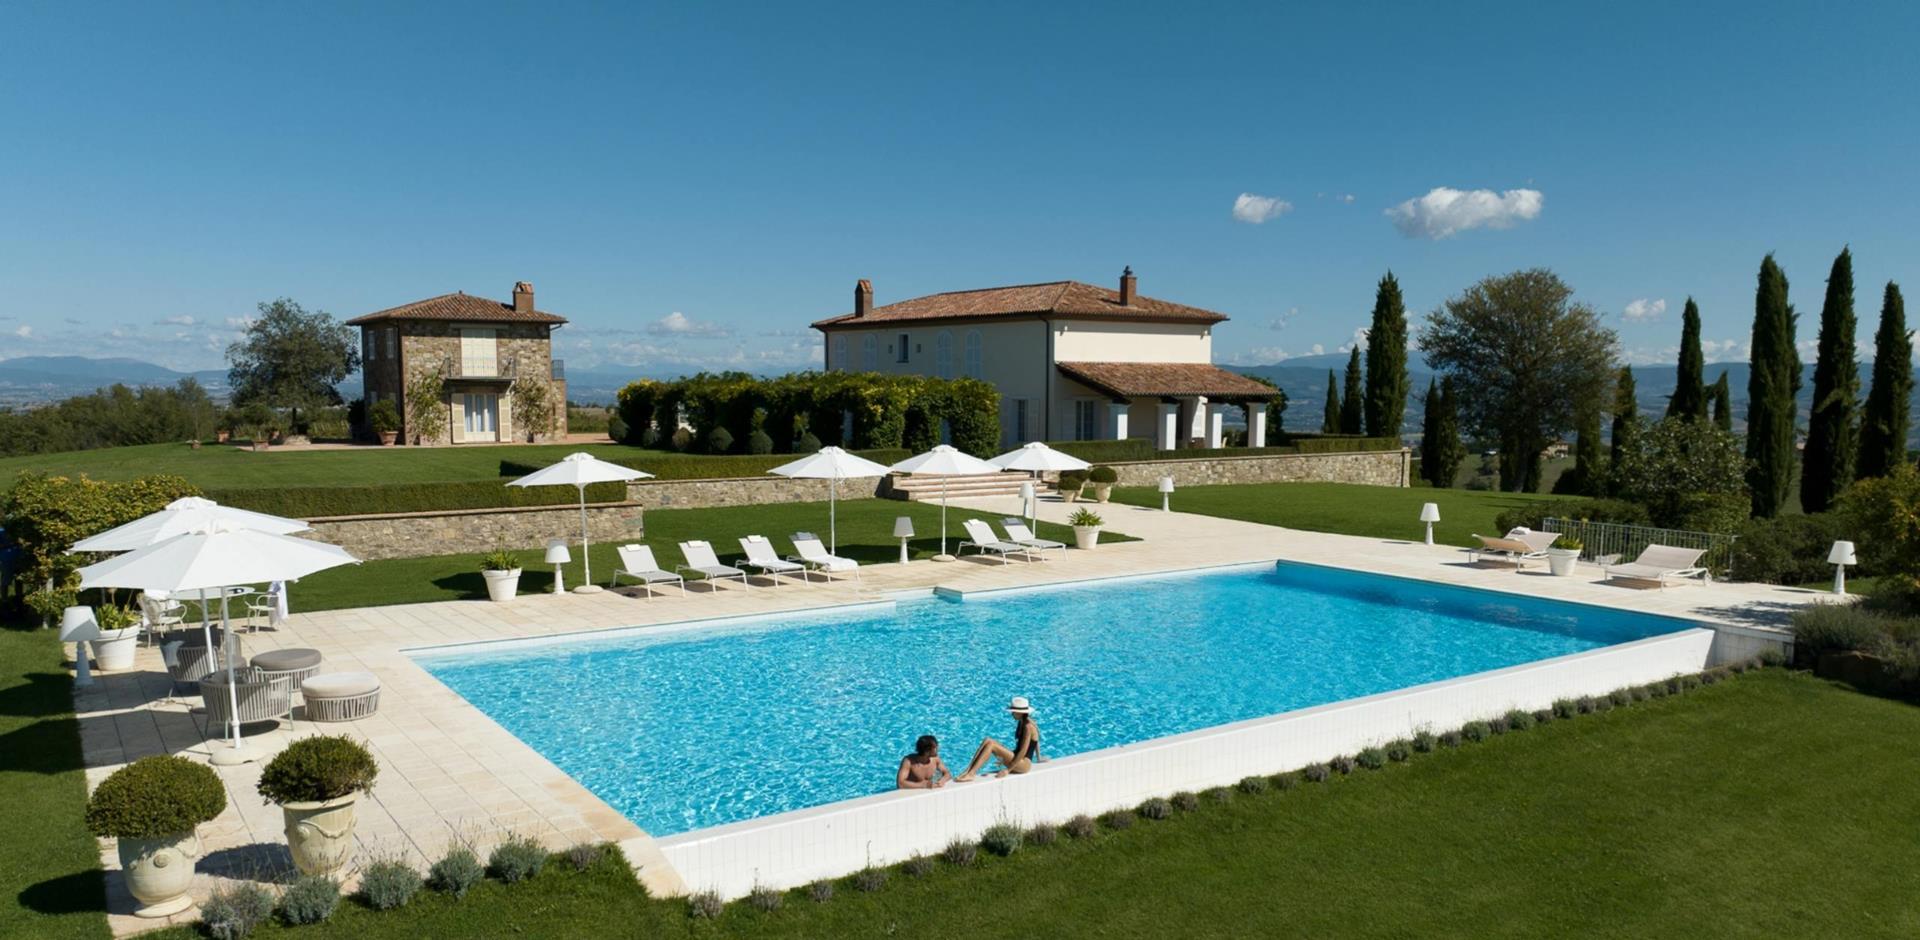 Pool area, Tevere Summer Dream, Perugia, Umbria, Italy, Europe